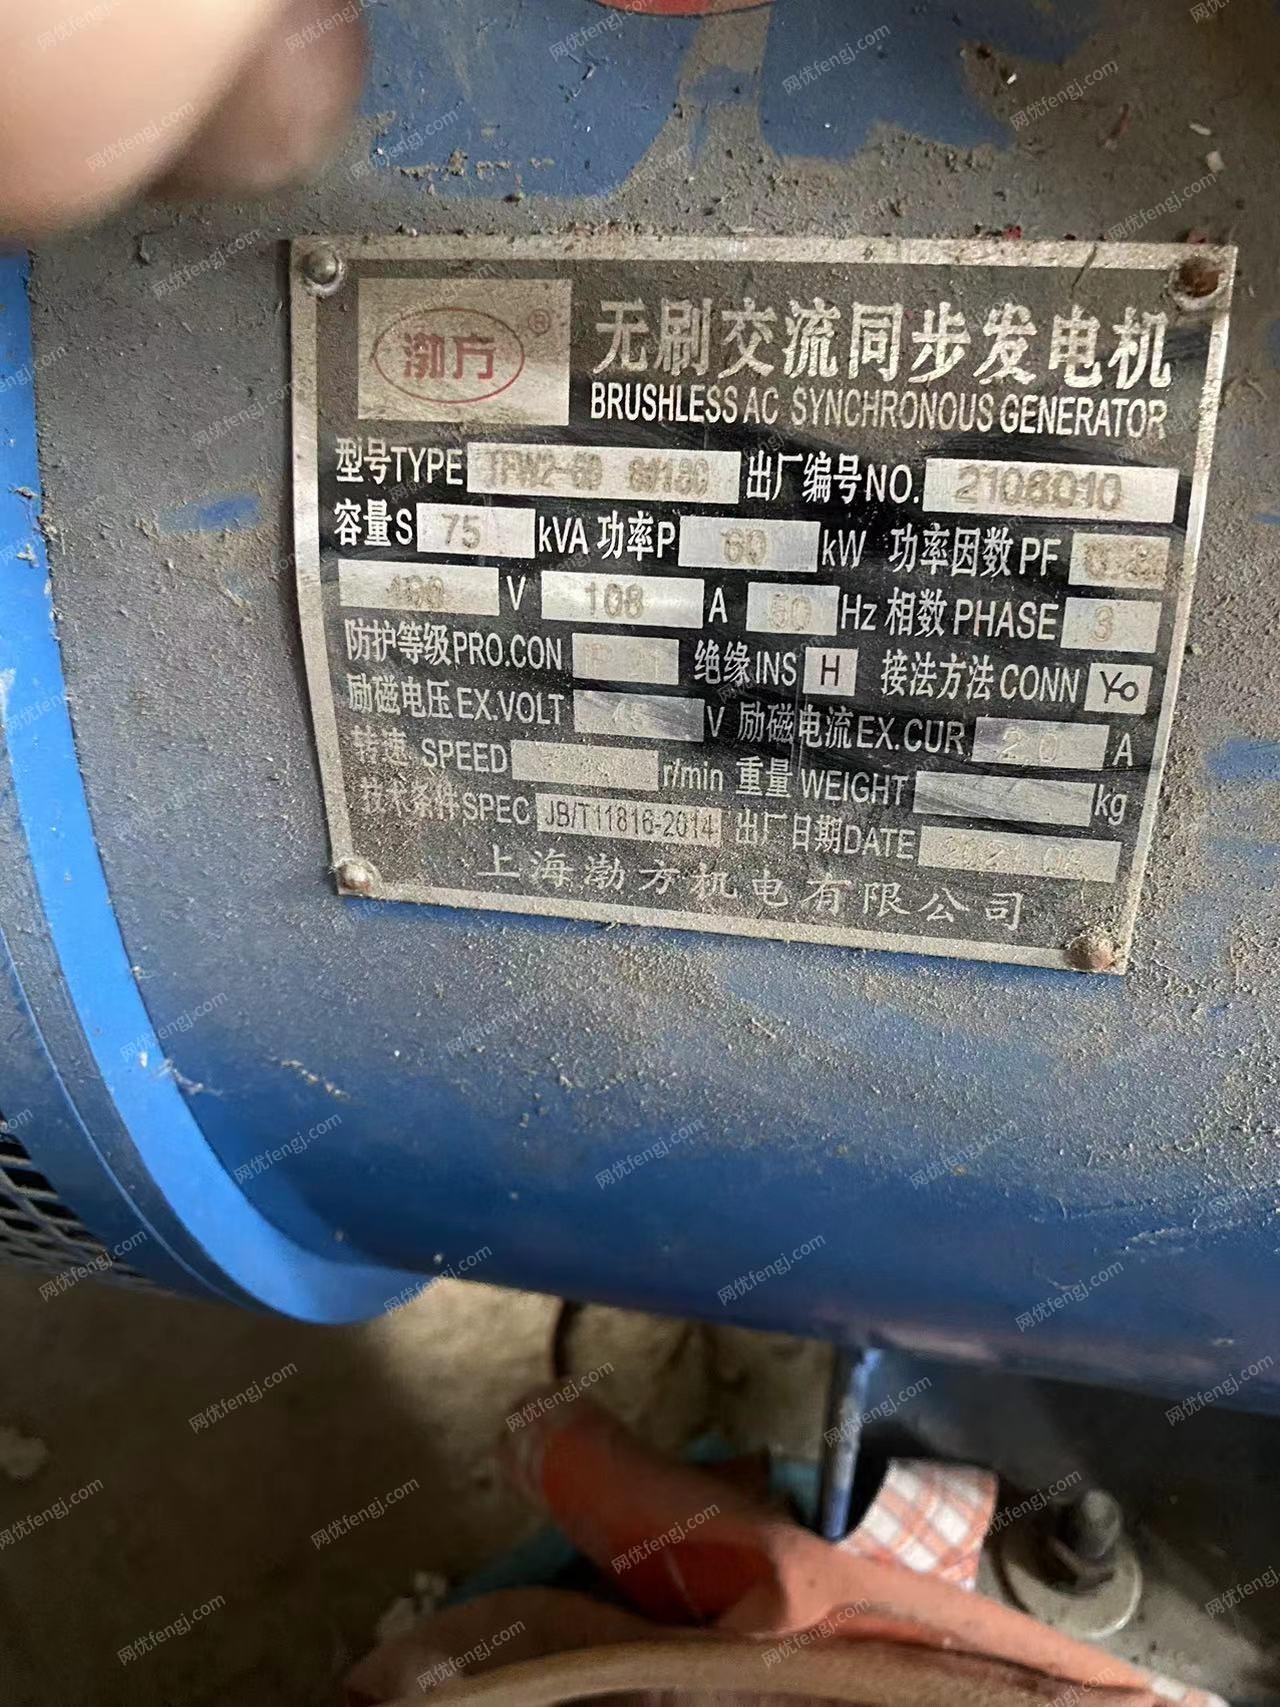 塑料膜厂处理21年上海勃方60KW无刷交流同步发电机,21年山东恒通70KW柴油发电机,有图片